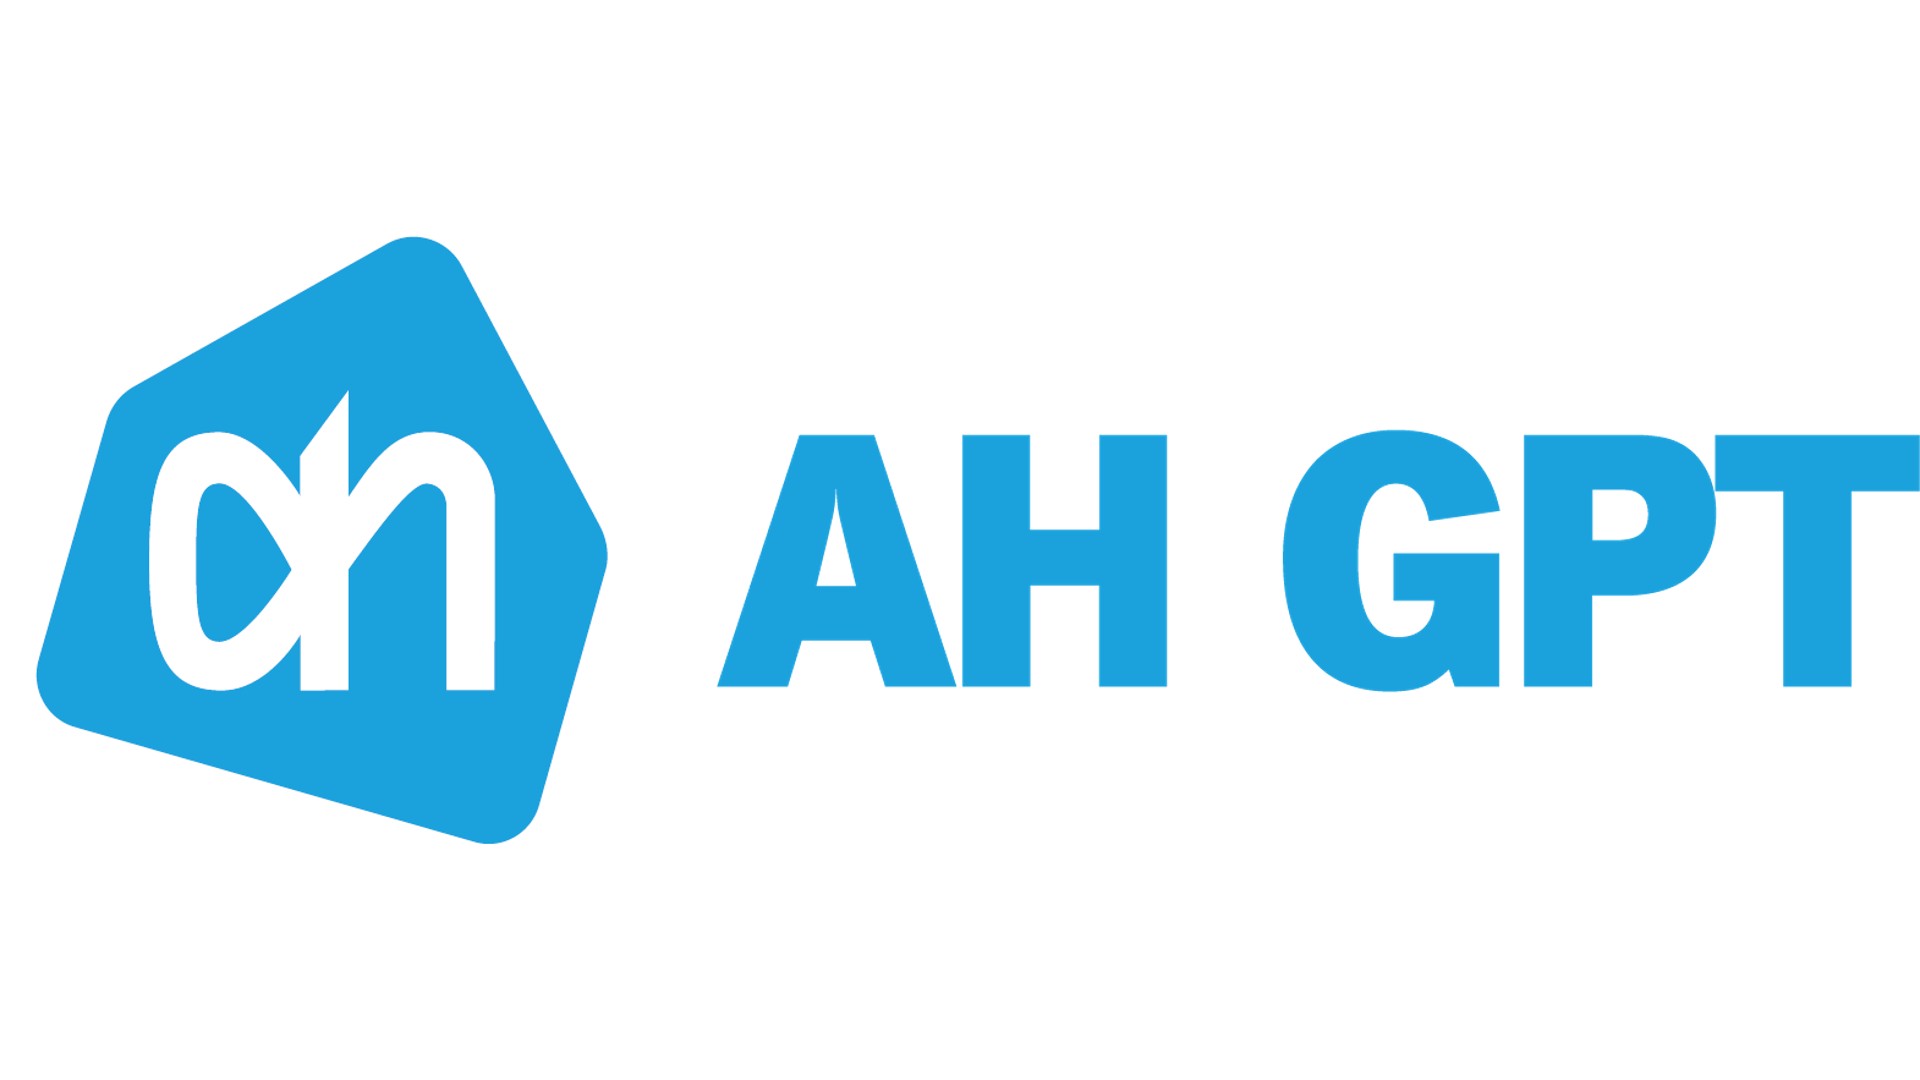 Albert Heijn innoveert met Gen AI voor klanten en medewerkers